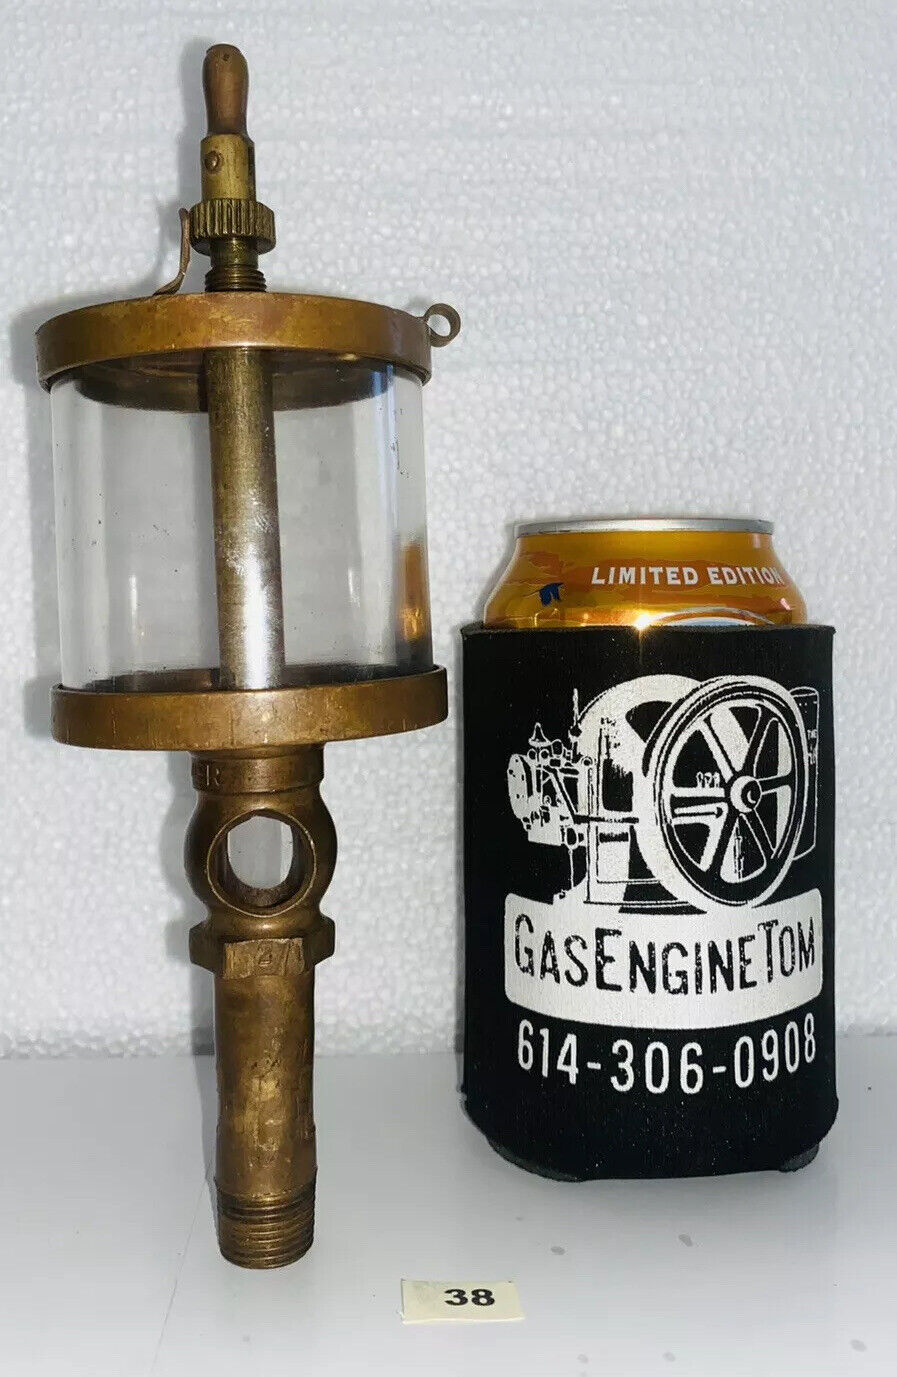 BESSEMER Brass Oiler Mail order Lubricator Oilfield Steampunk Engine Hi Gas Gorgeous